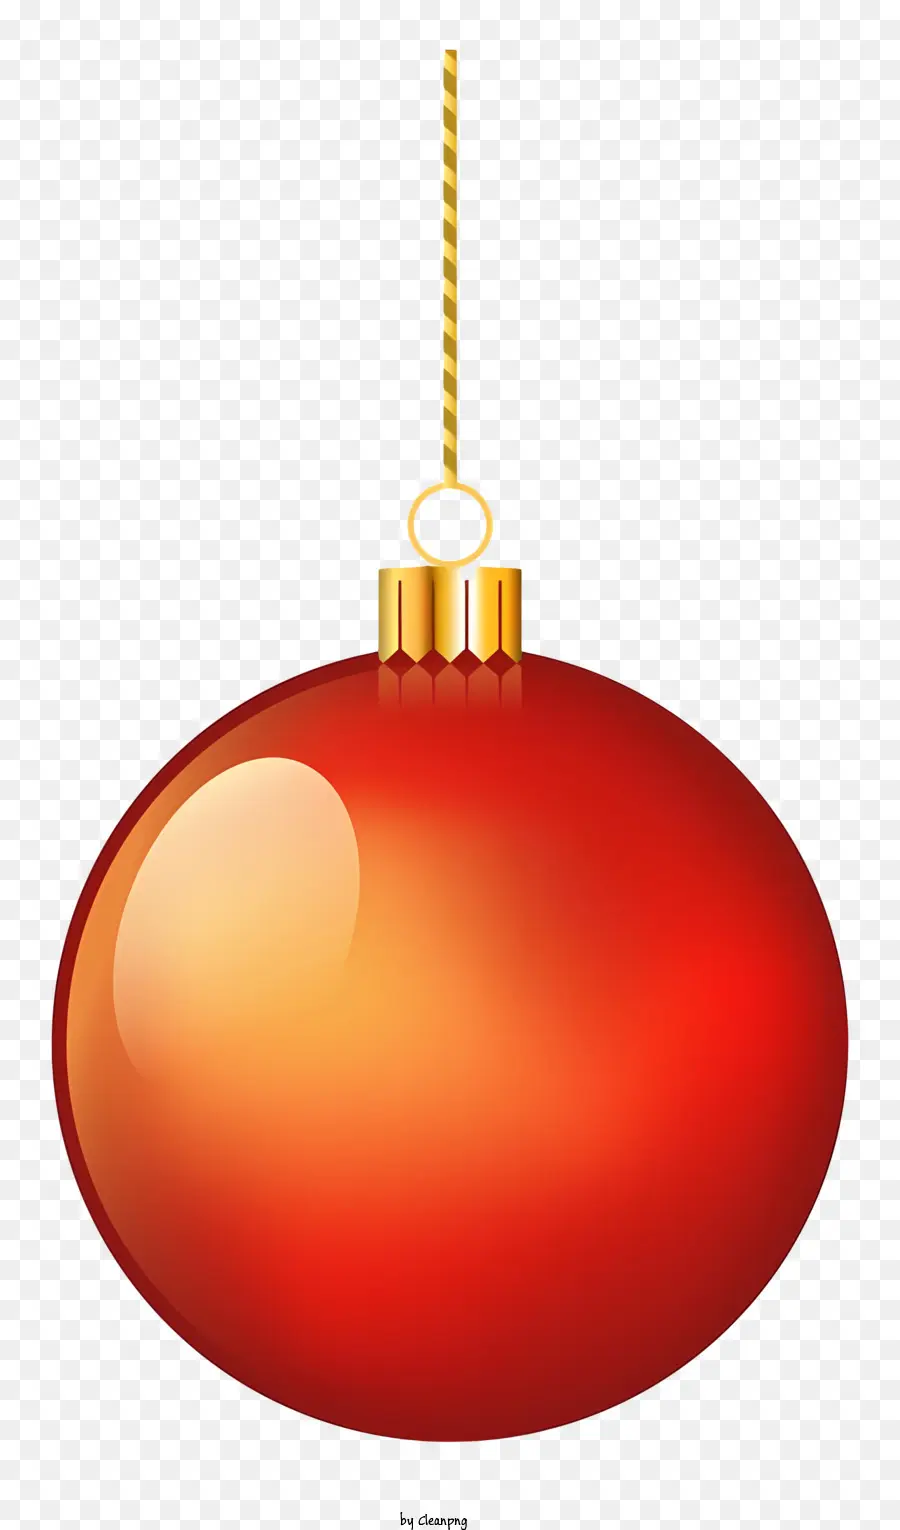 Weihnachtszierde - Rote Weihnachtsverzierung auf goldener Kette, glänzendes Finish